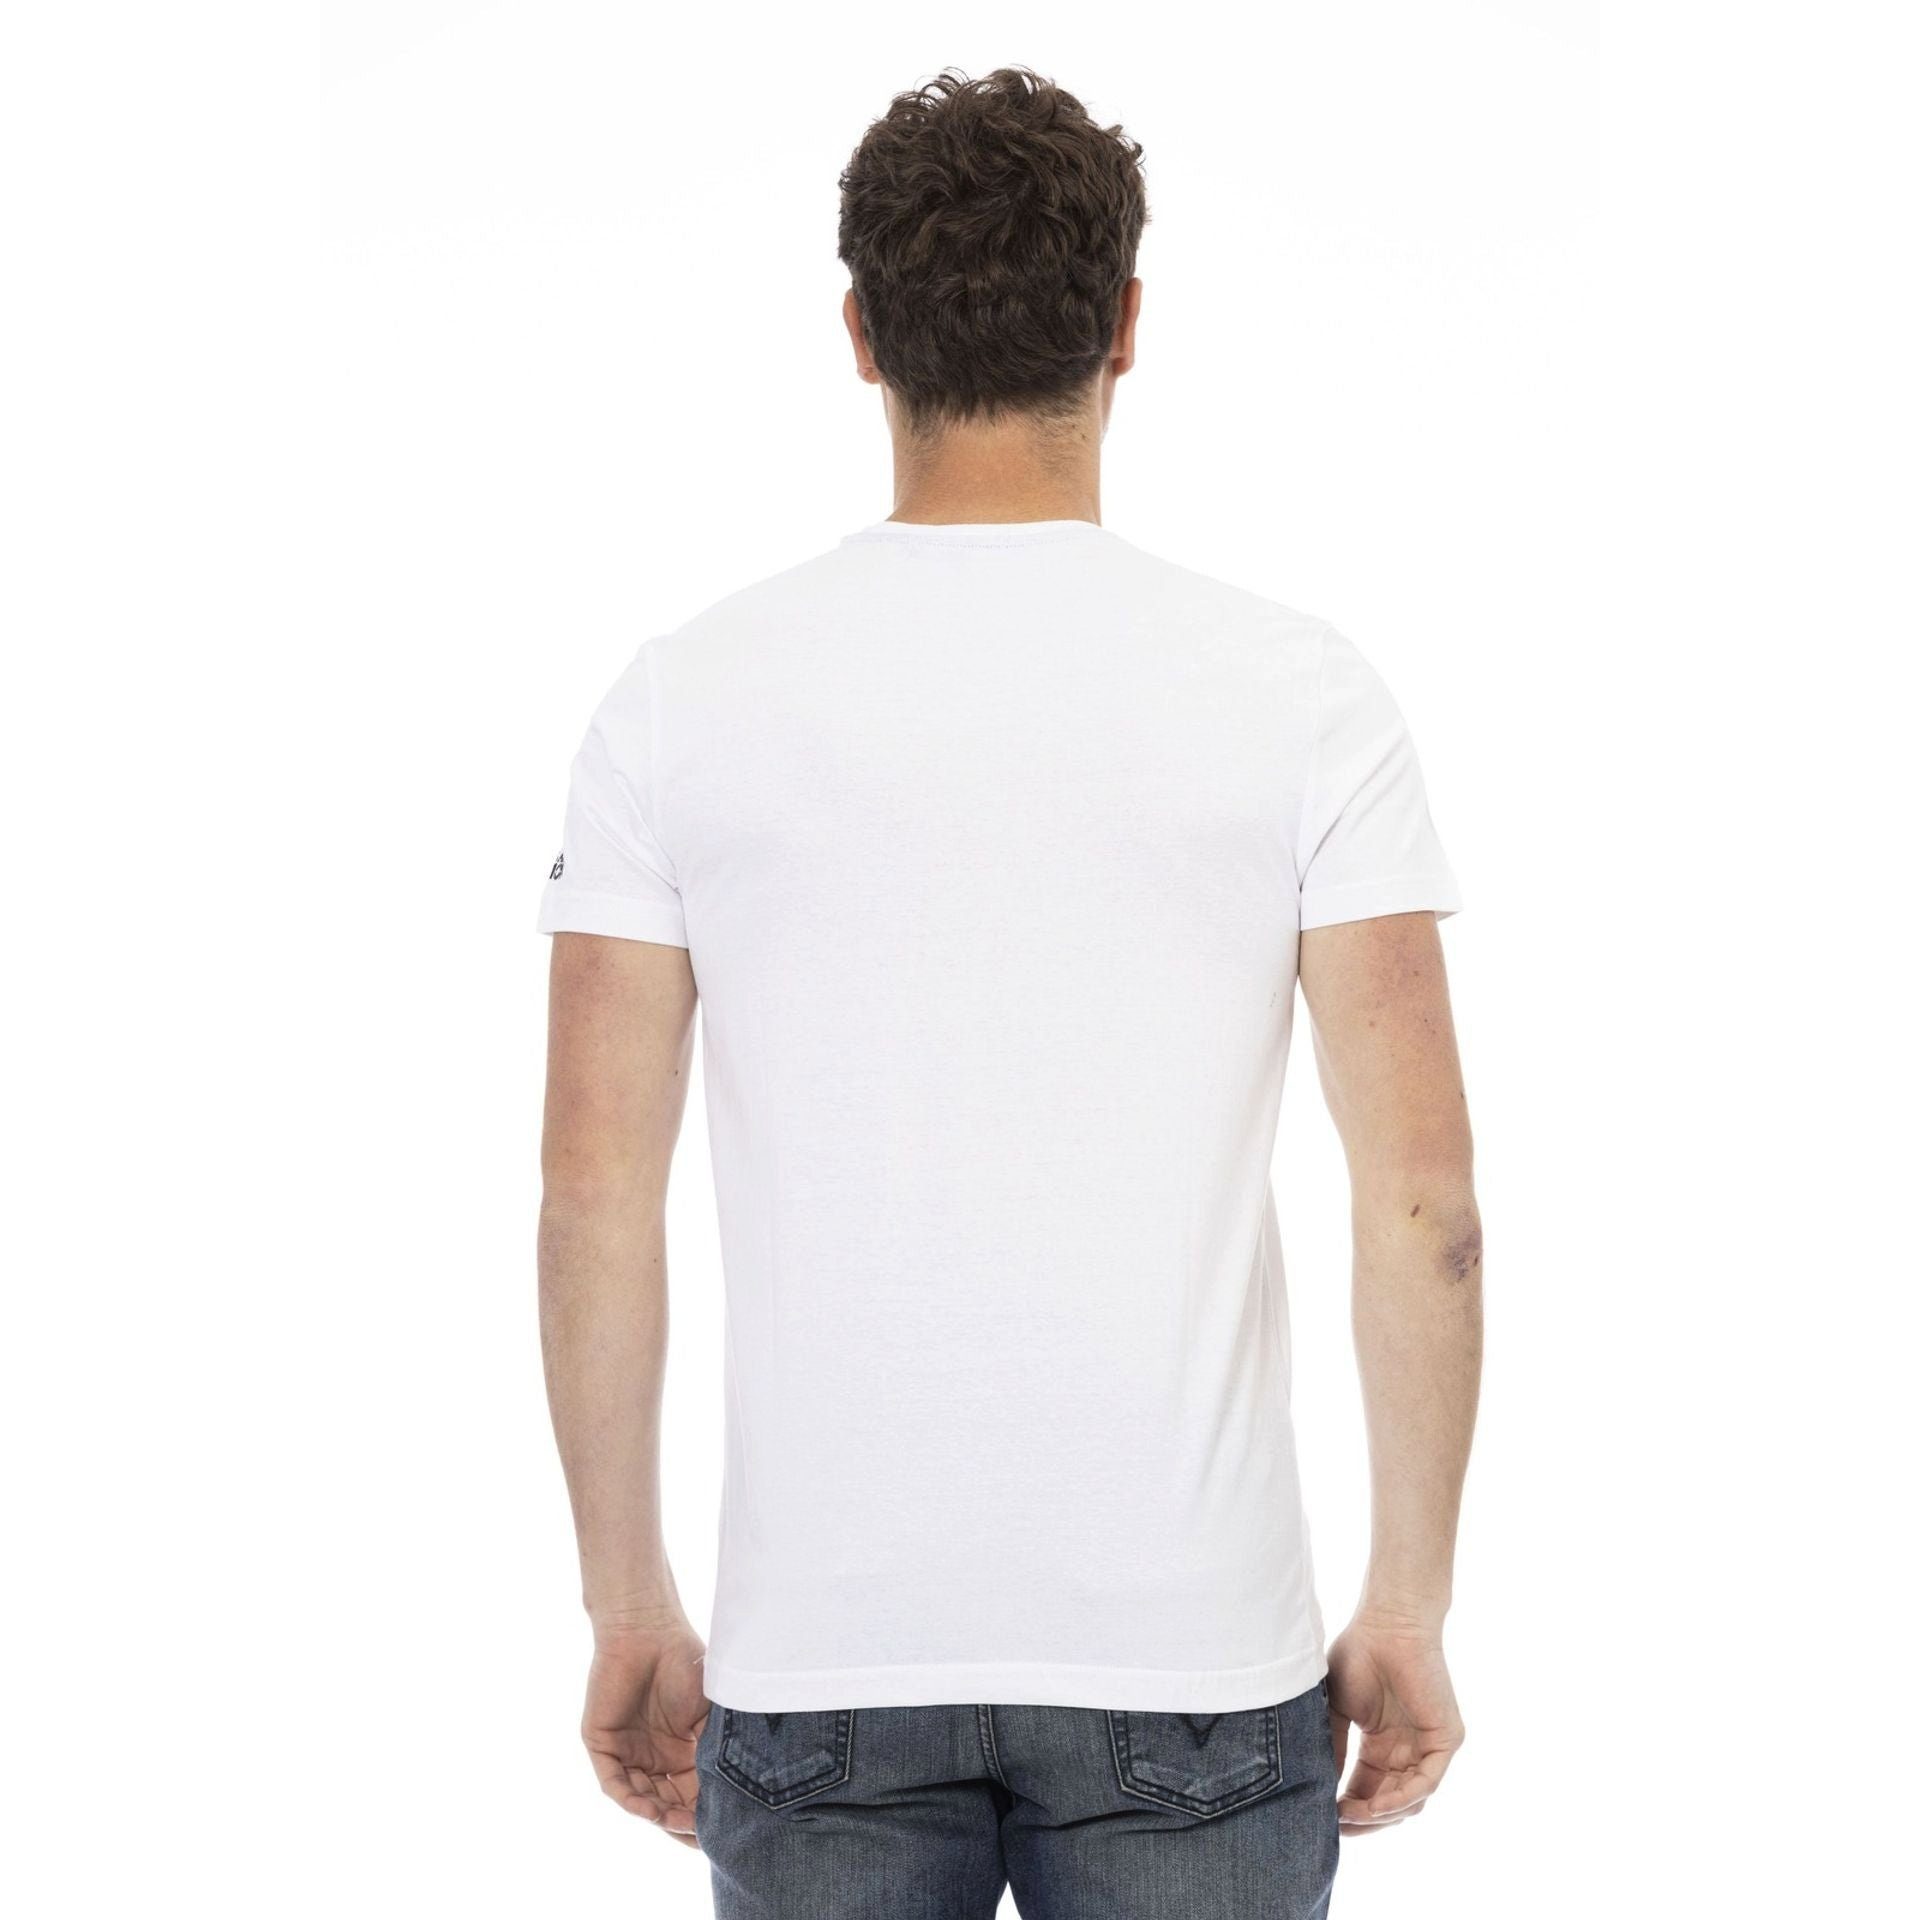 Trussardi sich durch T-Shirt eine Es Action das das aus, verleiht zeichnet Note stilvolle Weiß T-Shirts, Logo-Muster aber Trussardi subtile,